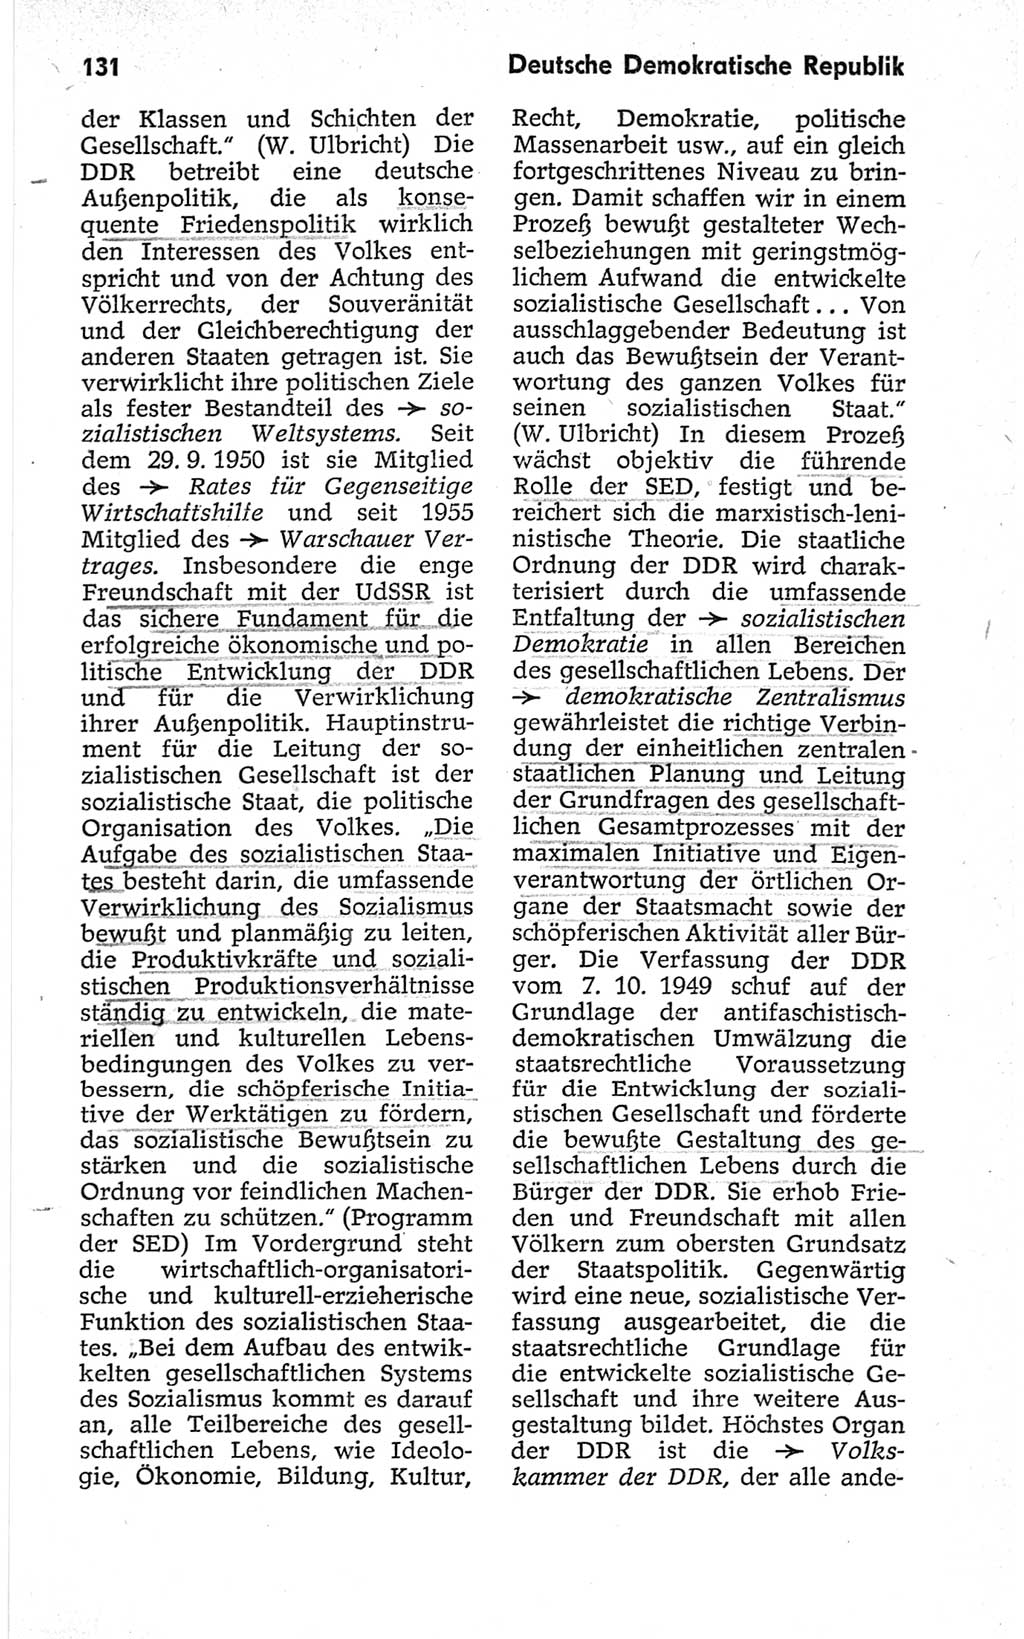 Kleines politisches Wörterbuch [Deutsche Demokratische Republik (DDR)] 1967, Seite 131 (Kl. pol. Wb. DDR 1967, S. 131)